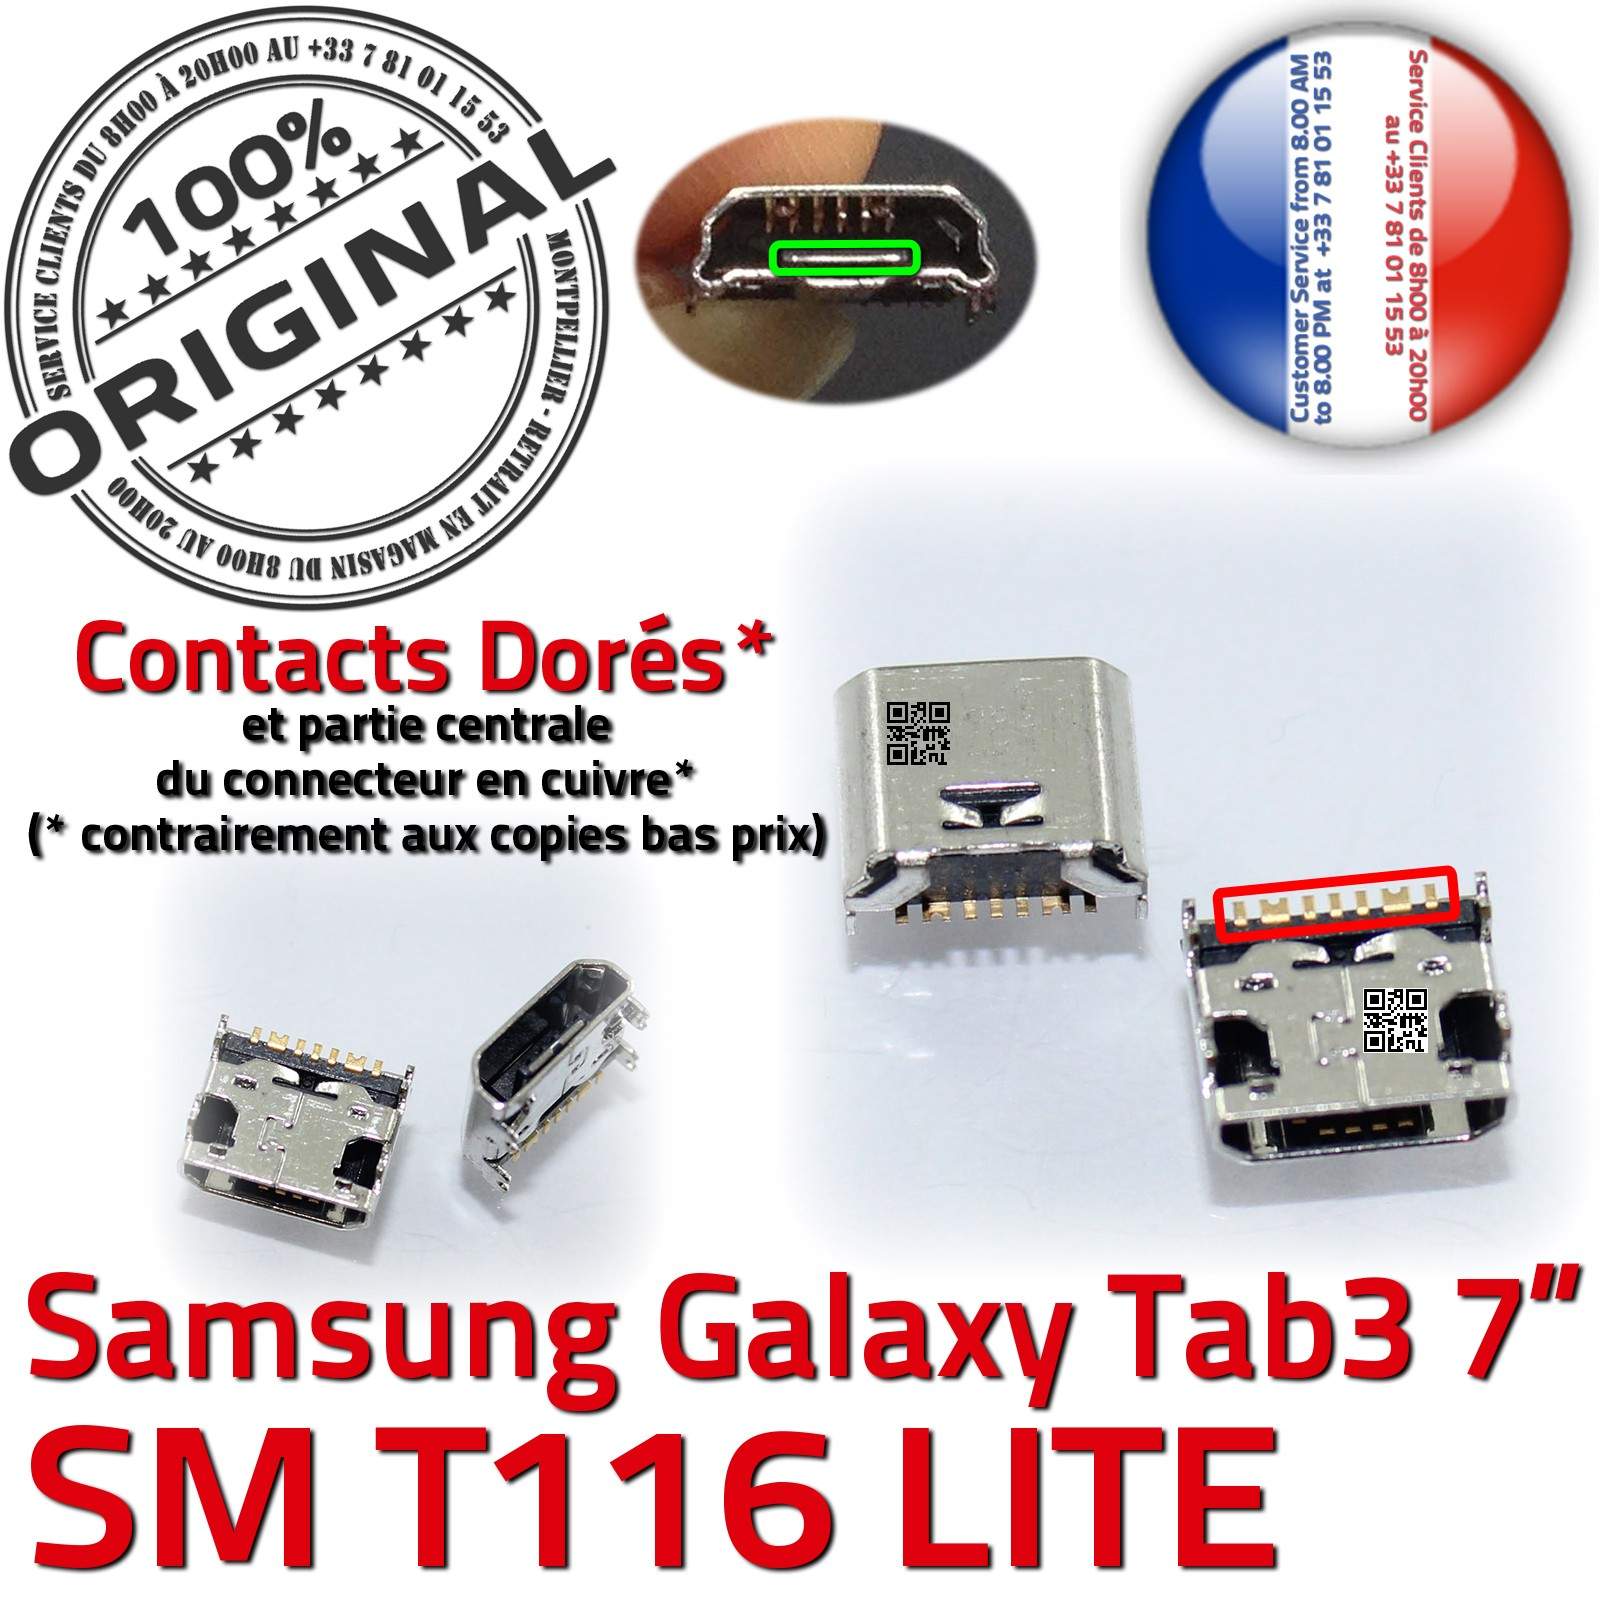 ORIGINAL Samsung Galaxy TAB 3 SM T116 Connecteur de charge à souder Micro USB Pins Dorés Dock Prise Connector Chargeur 7 inch